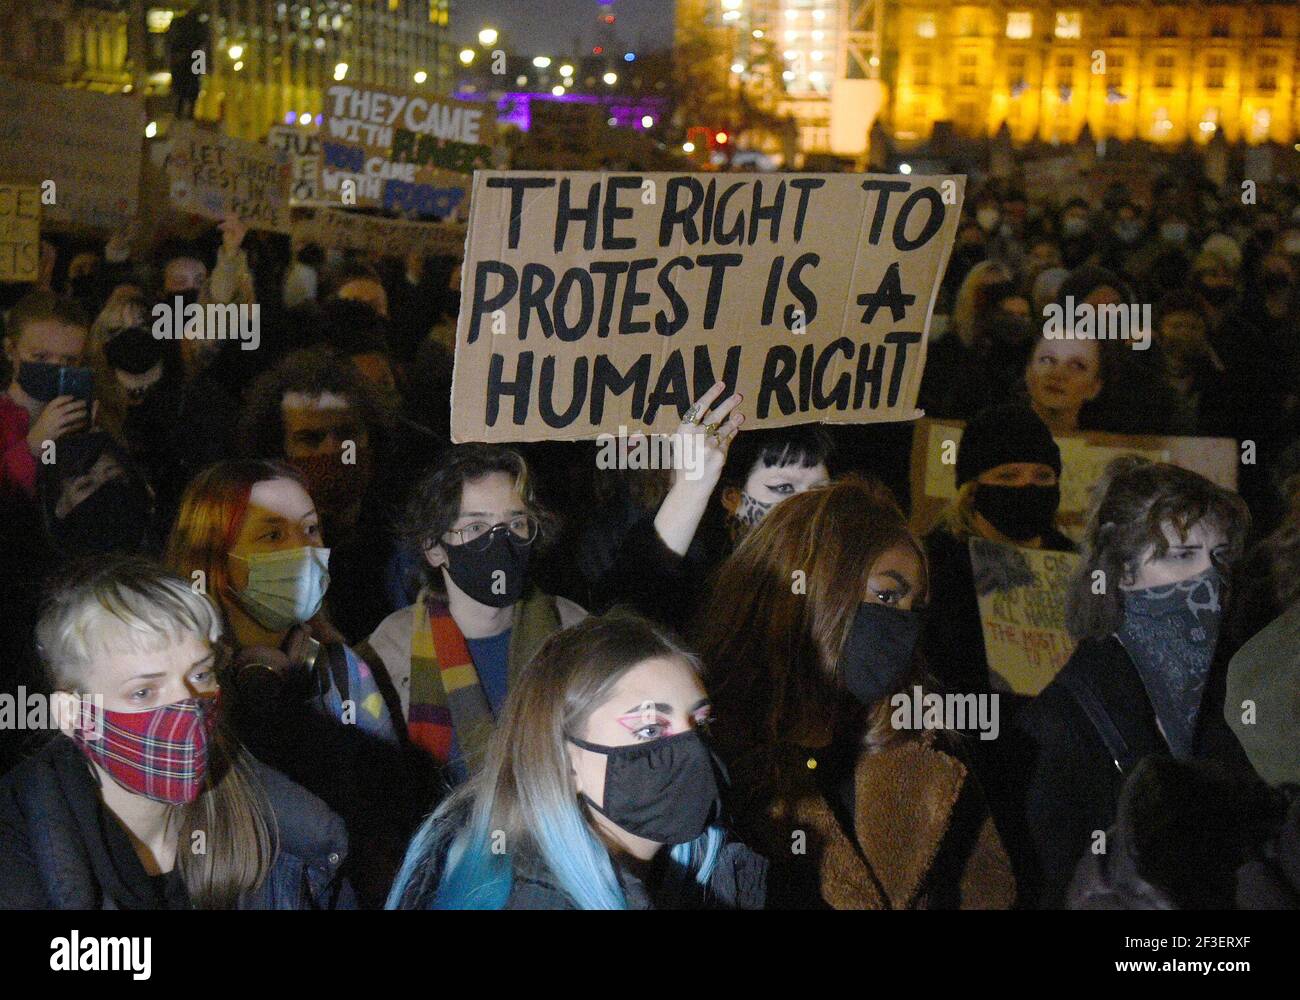 Personas en Parliament Square, Londres, participando en una manifestación contra la violencia de género tras el asesinato de Sarah Everard. Foto fecha: Martes 16 de marzo de 2021. Foto de stock